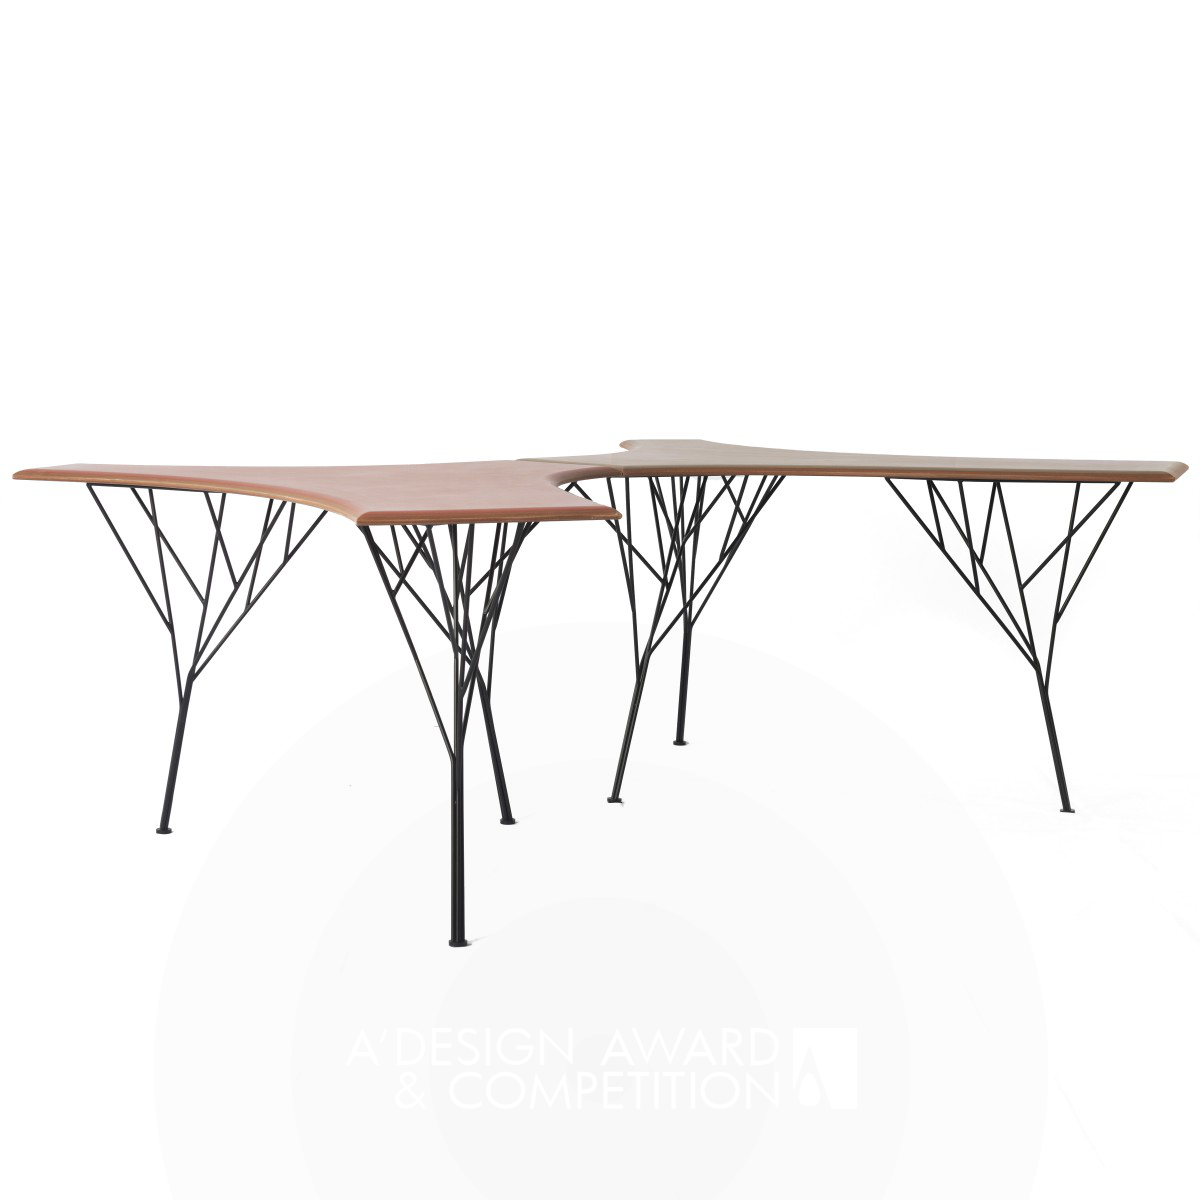 Un tavolo che cresce come un albero: il design innovativo di Triangle